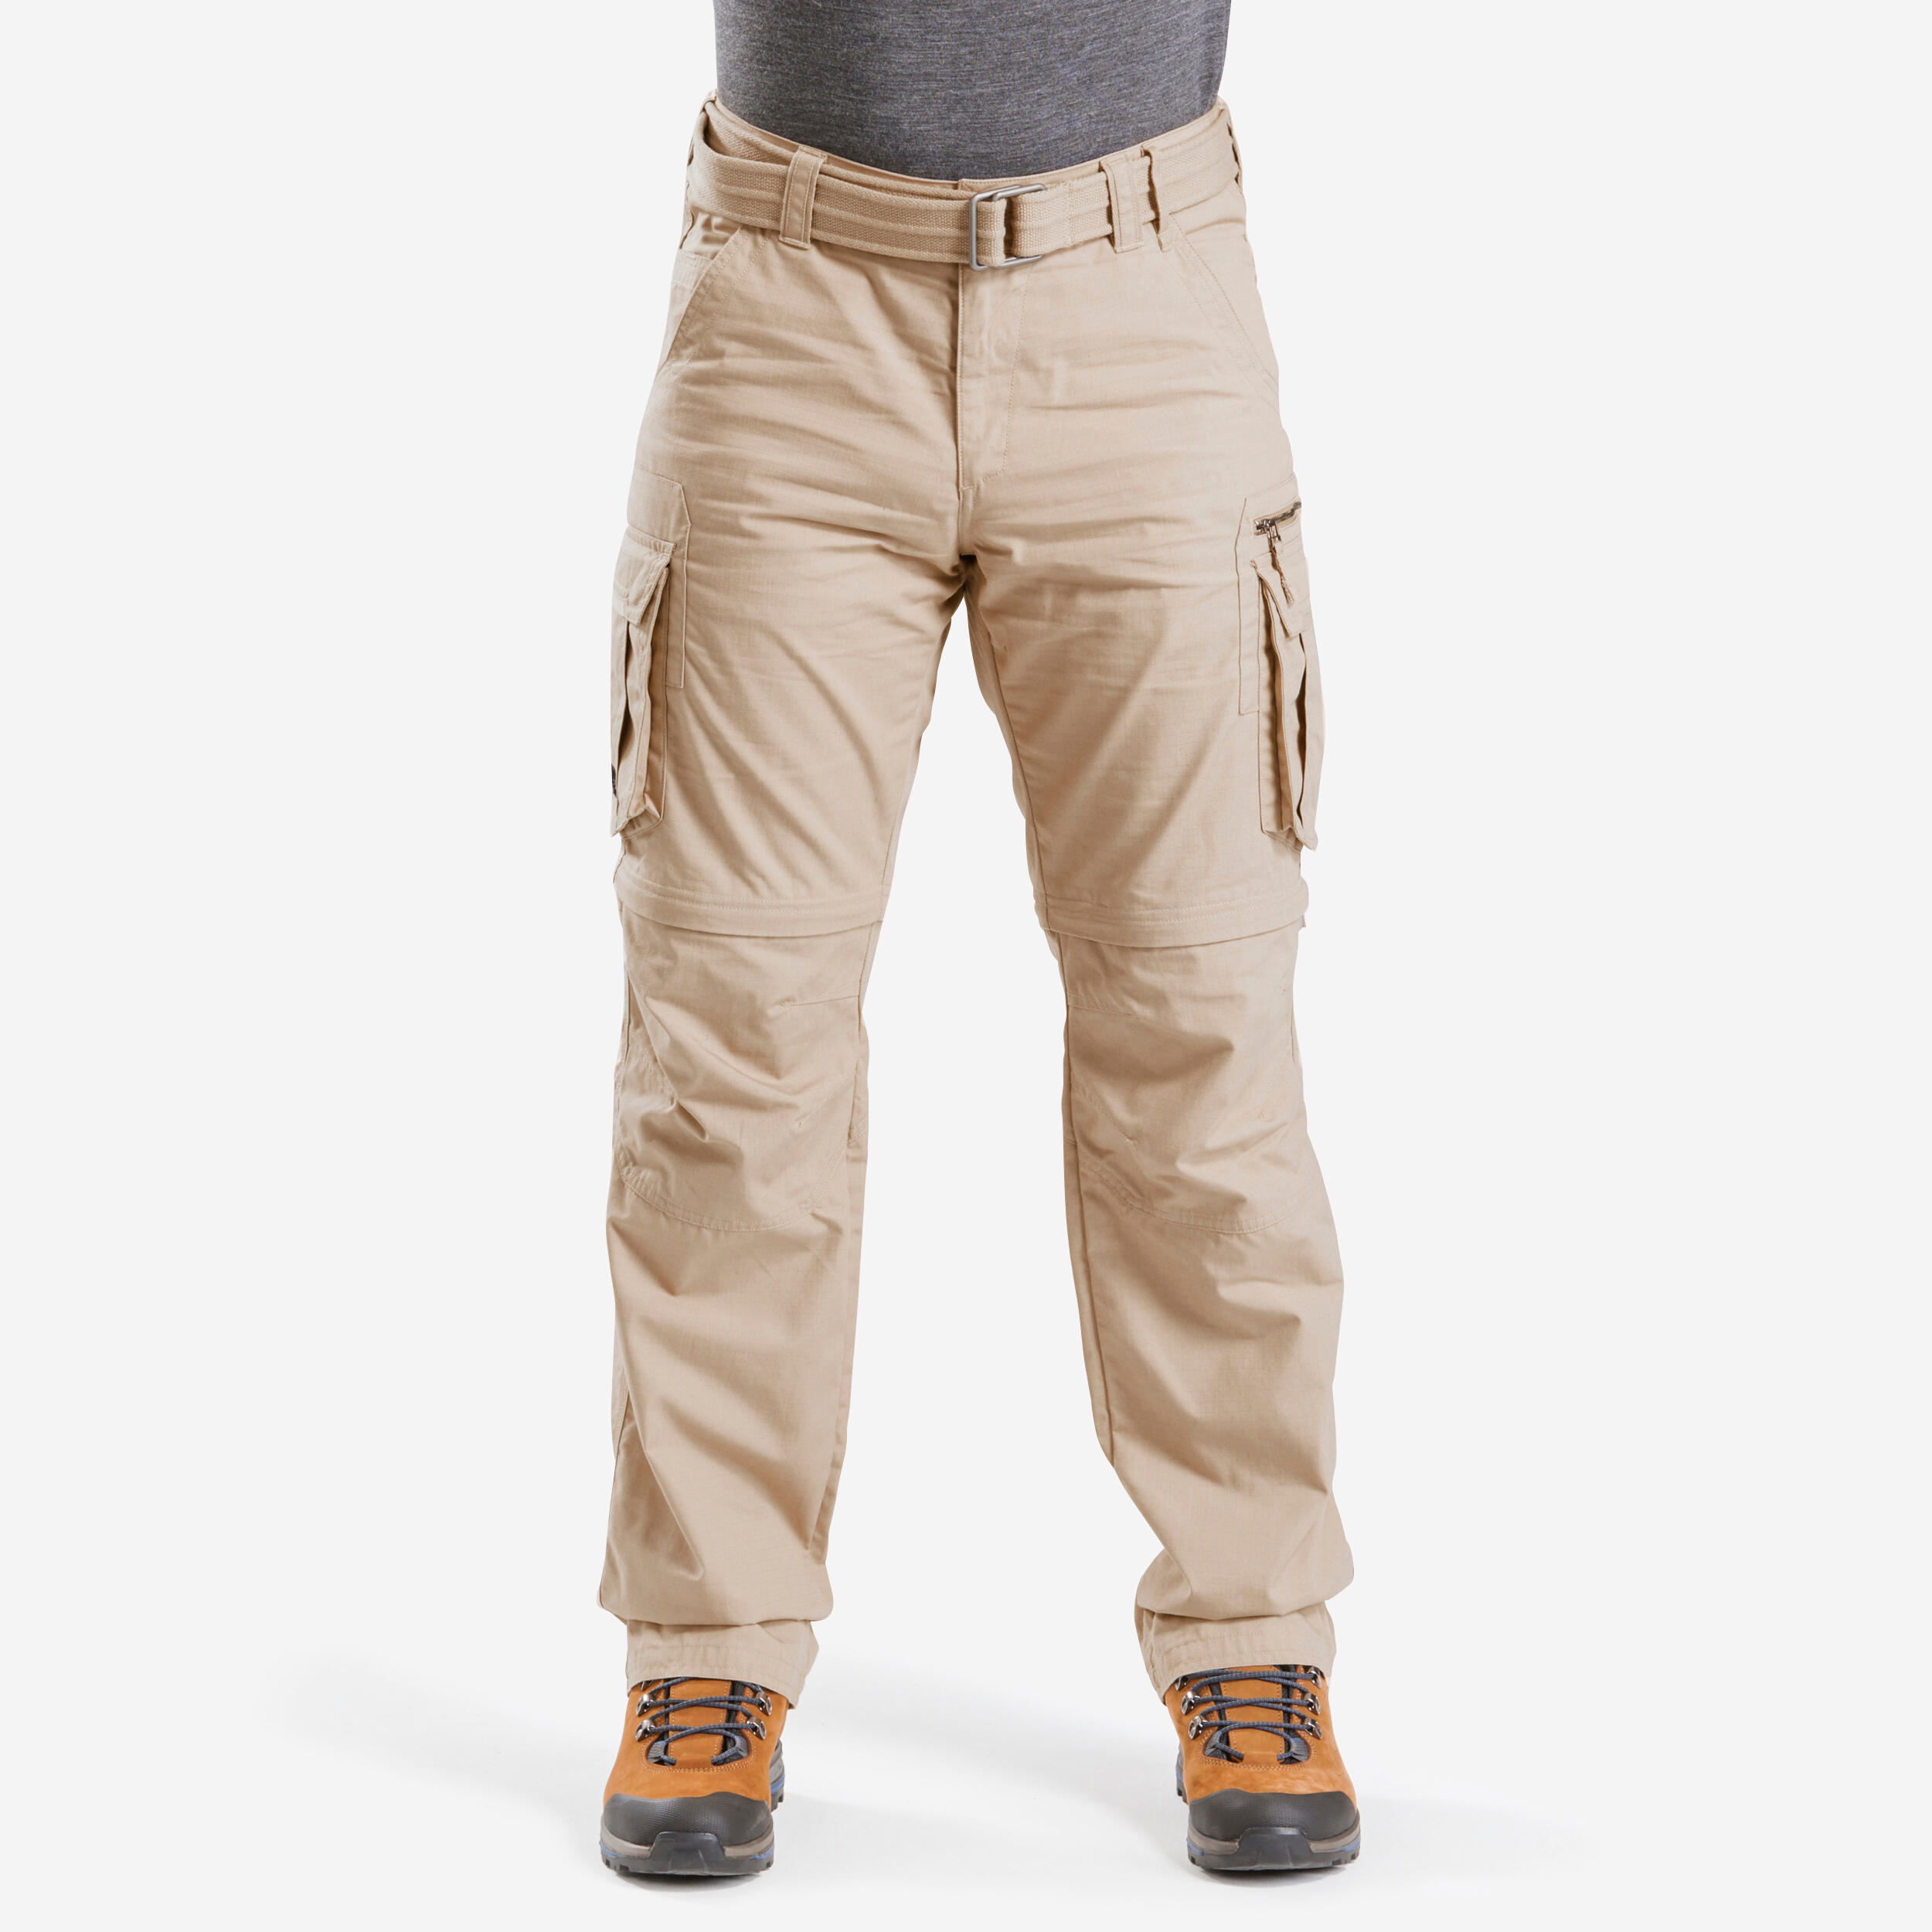 pantalon-desmontable-montaa-y-trekking-cargo-hombre-travel-100-beige.jpg